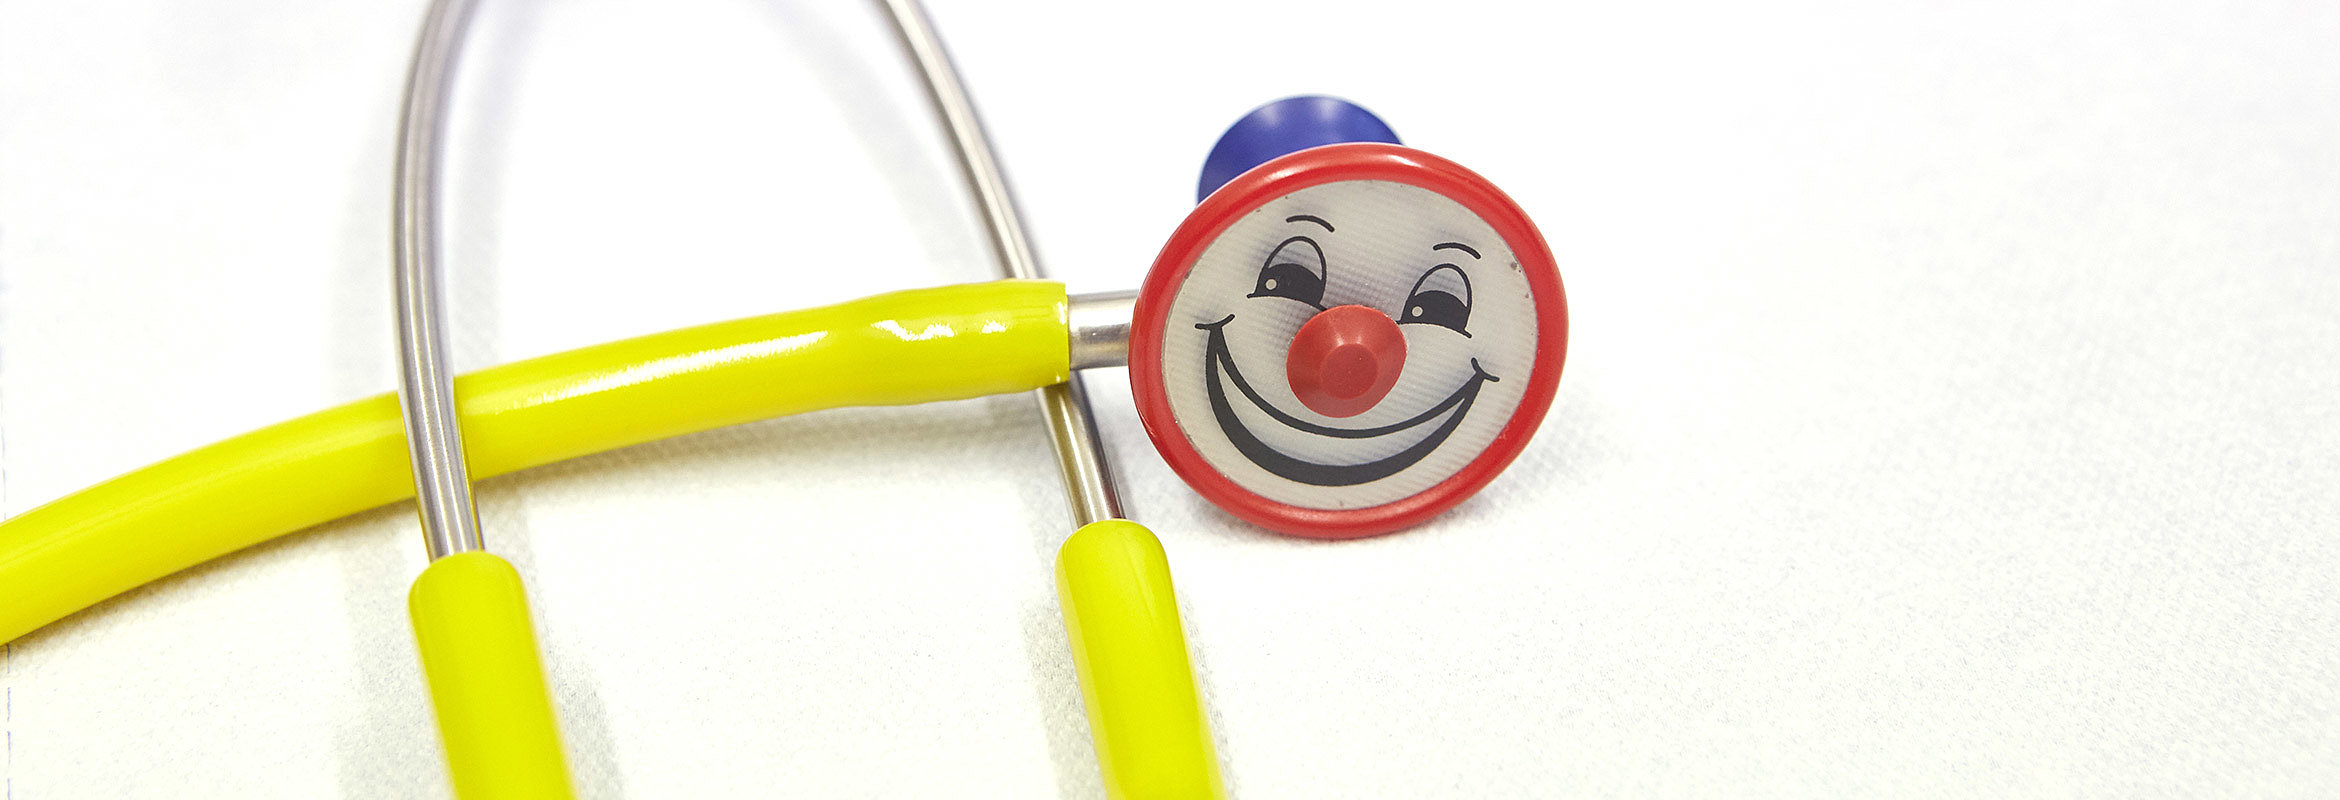 Stethoskop mit einem lachenden Clownsgesicht